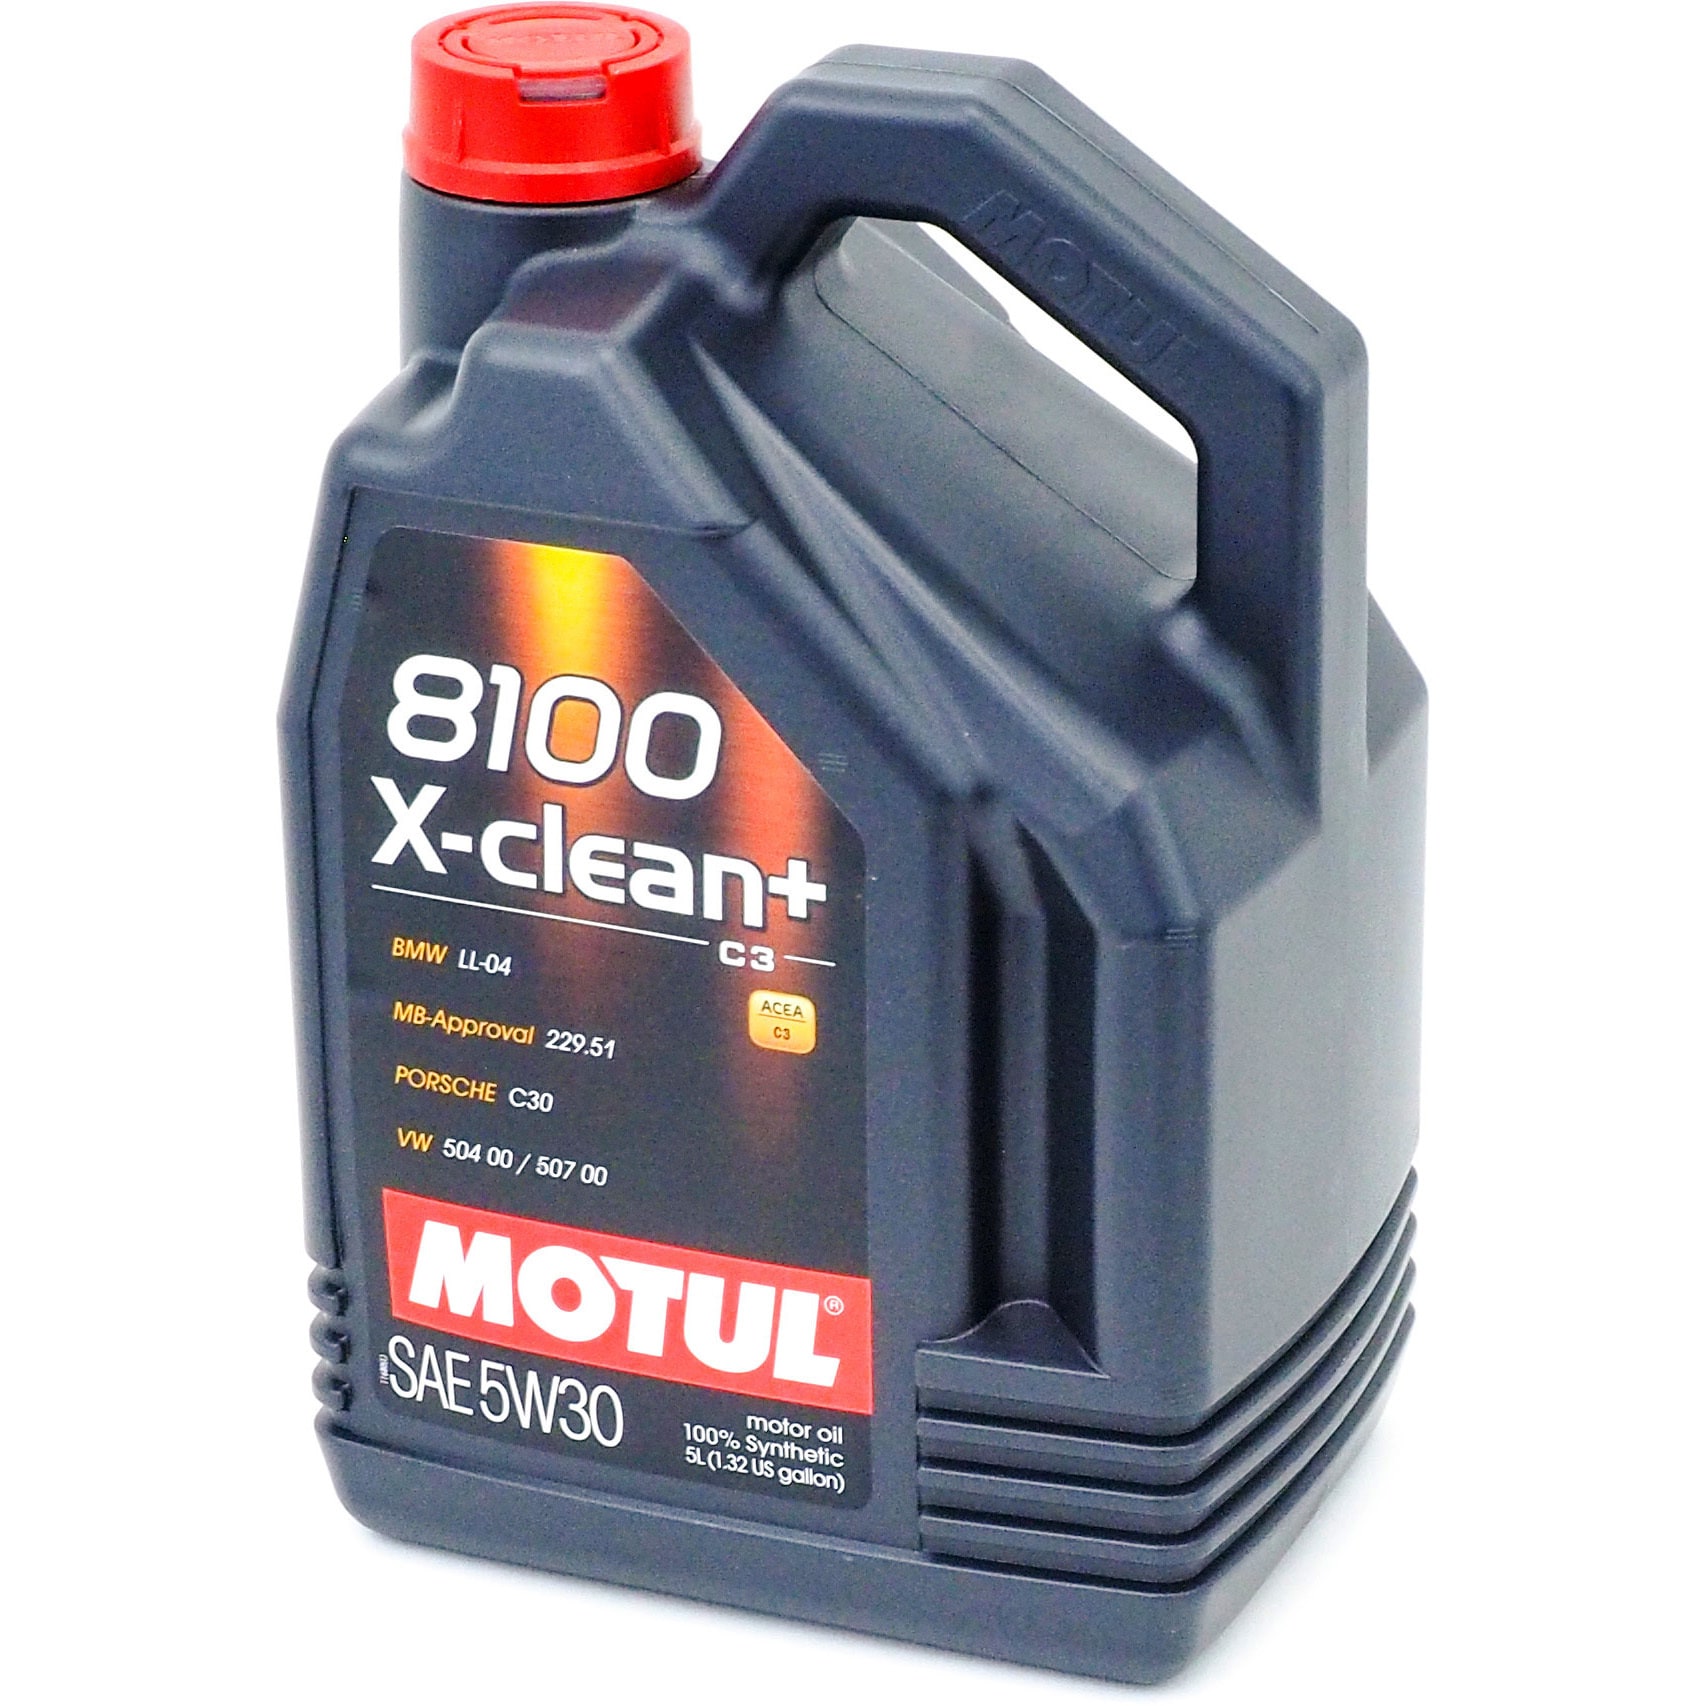 Motul 5W30 8100 X-Clean+ Engine Oil (BMW, Porsche, Mercedes, Volkswagen)  20L